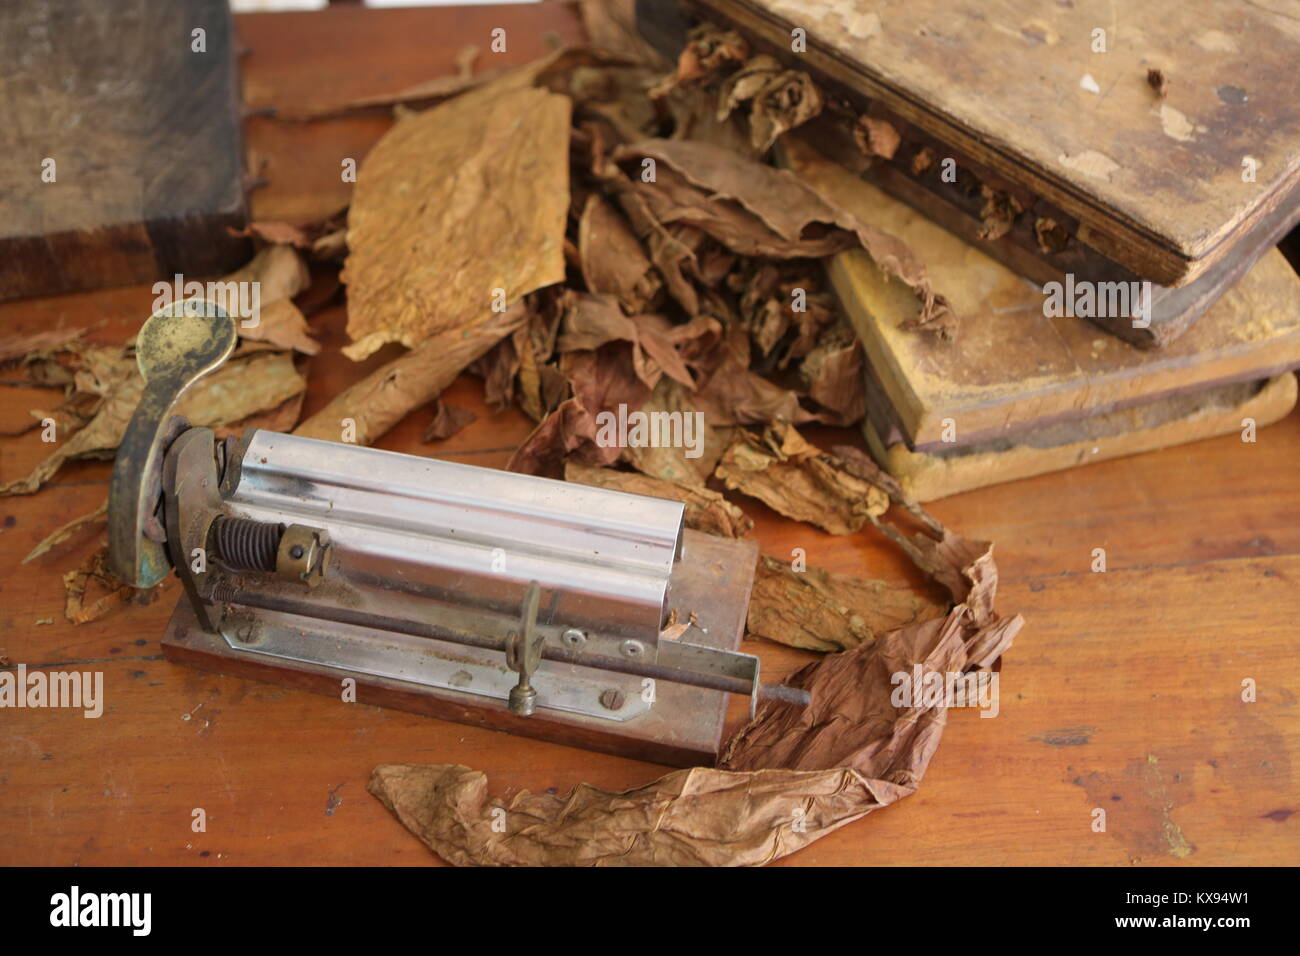 Zigarren Herstellung in Cuba -sigari manufacturing in Cuba Foto Stock